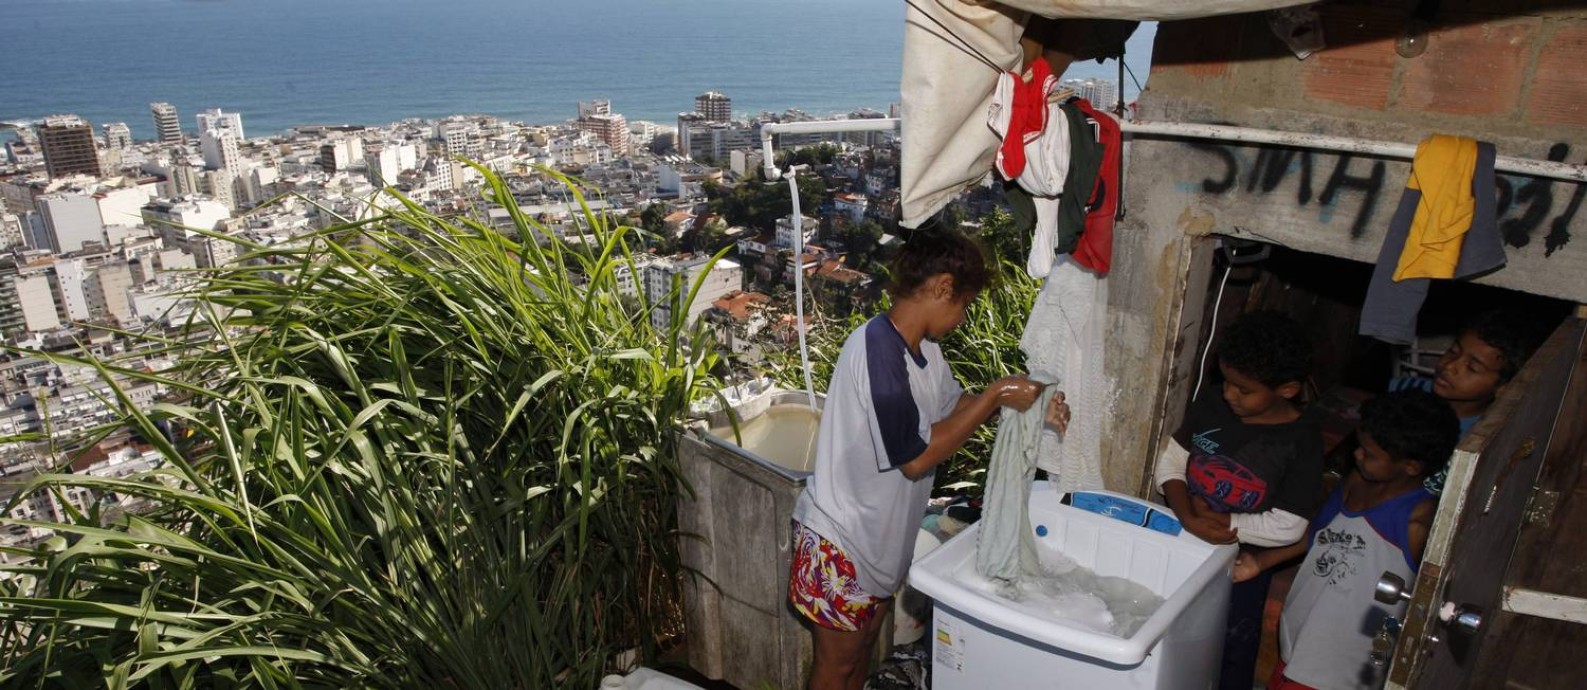 
Moradores na favela do Pavão Pavãozinho, no bairro de Copacabana, no Rio
Foto:
/
Domingos Peixoto
